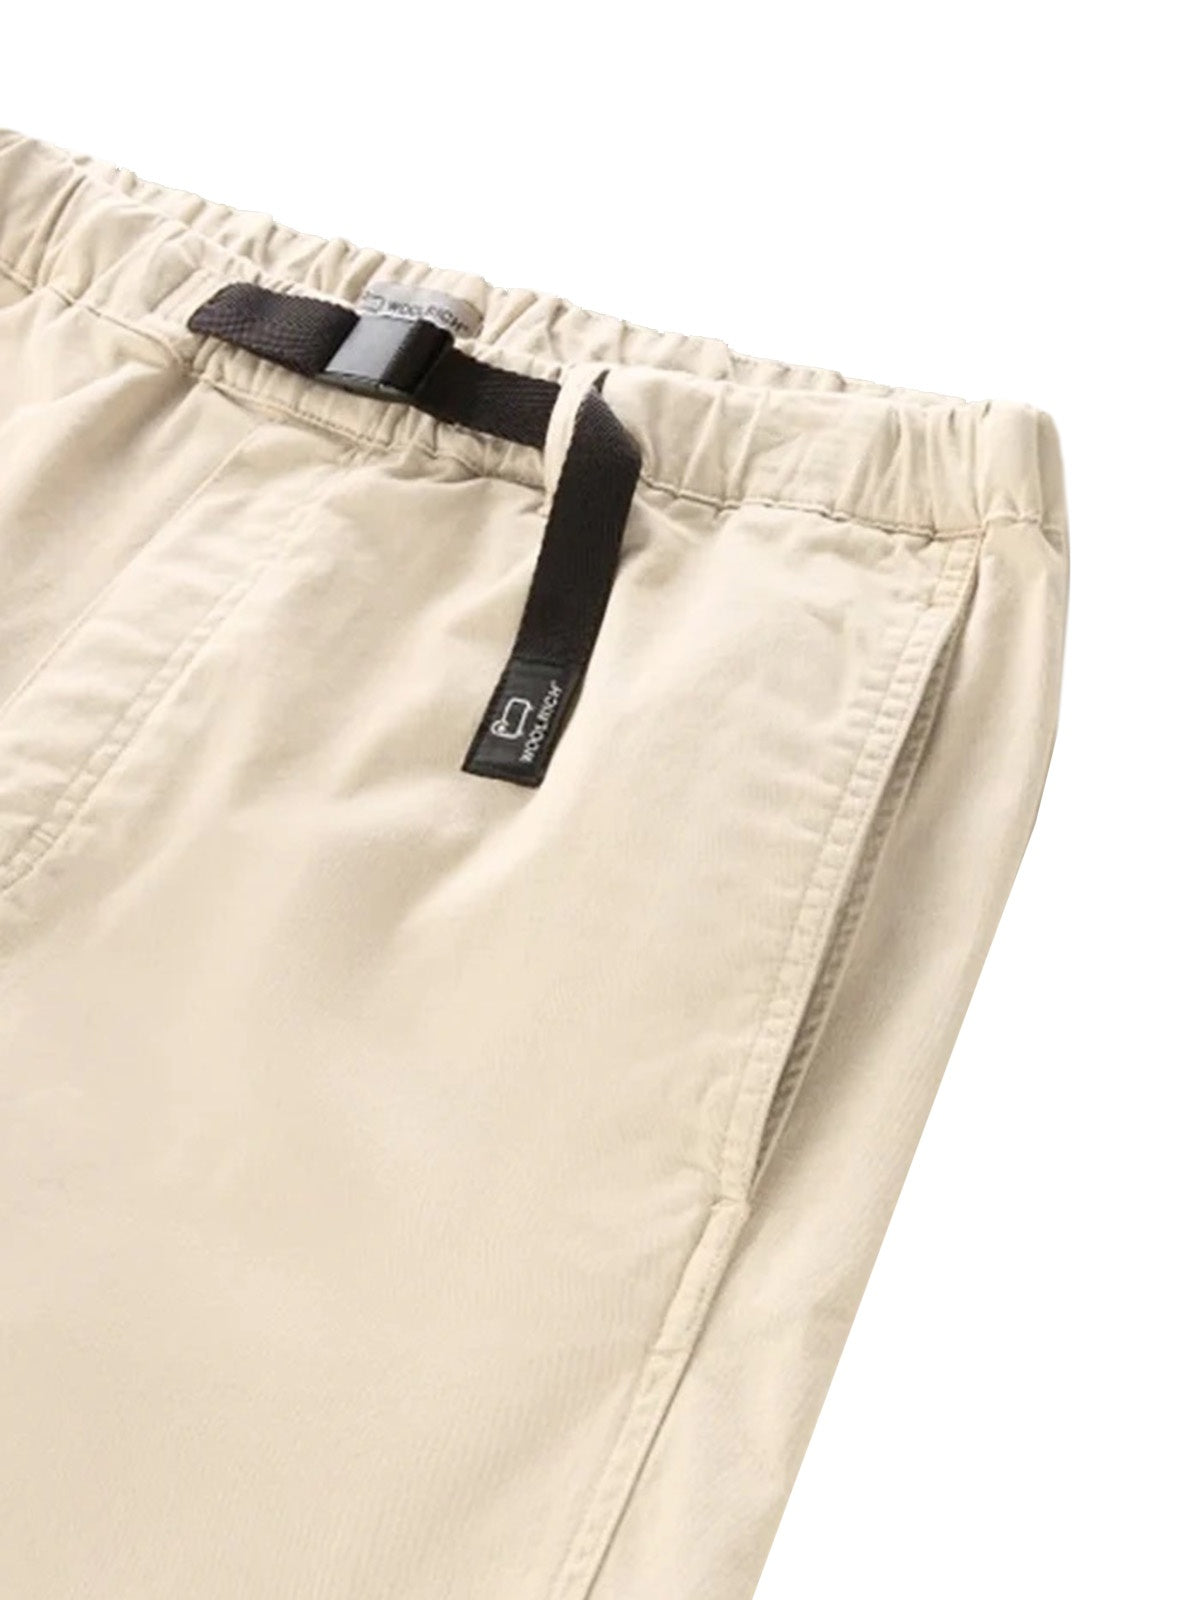 Bermuda Uomo Woolrich - Pantaloncini Chino In Cotone Elasticizzato - Bianco